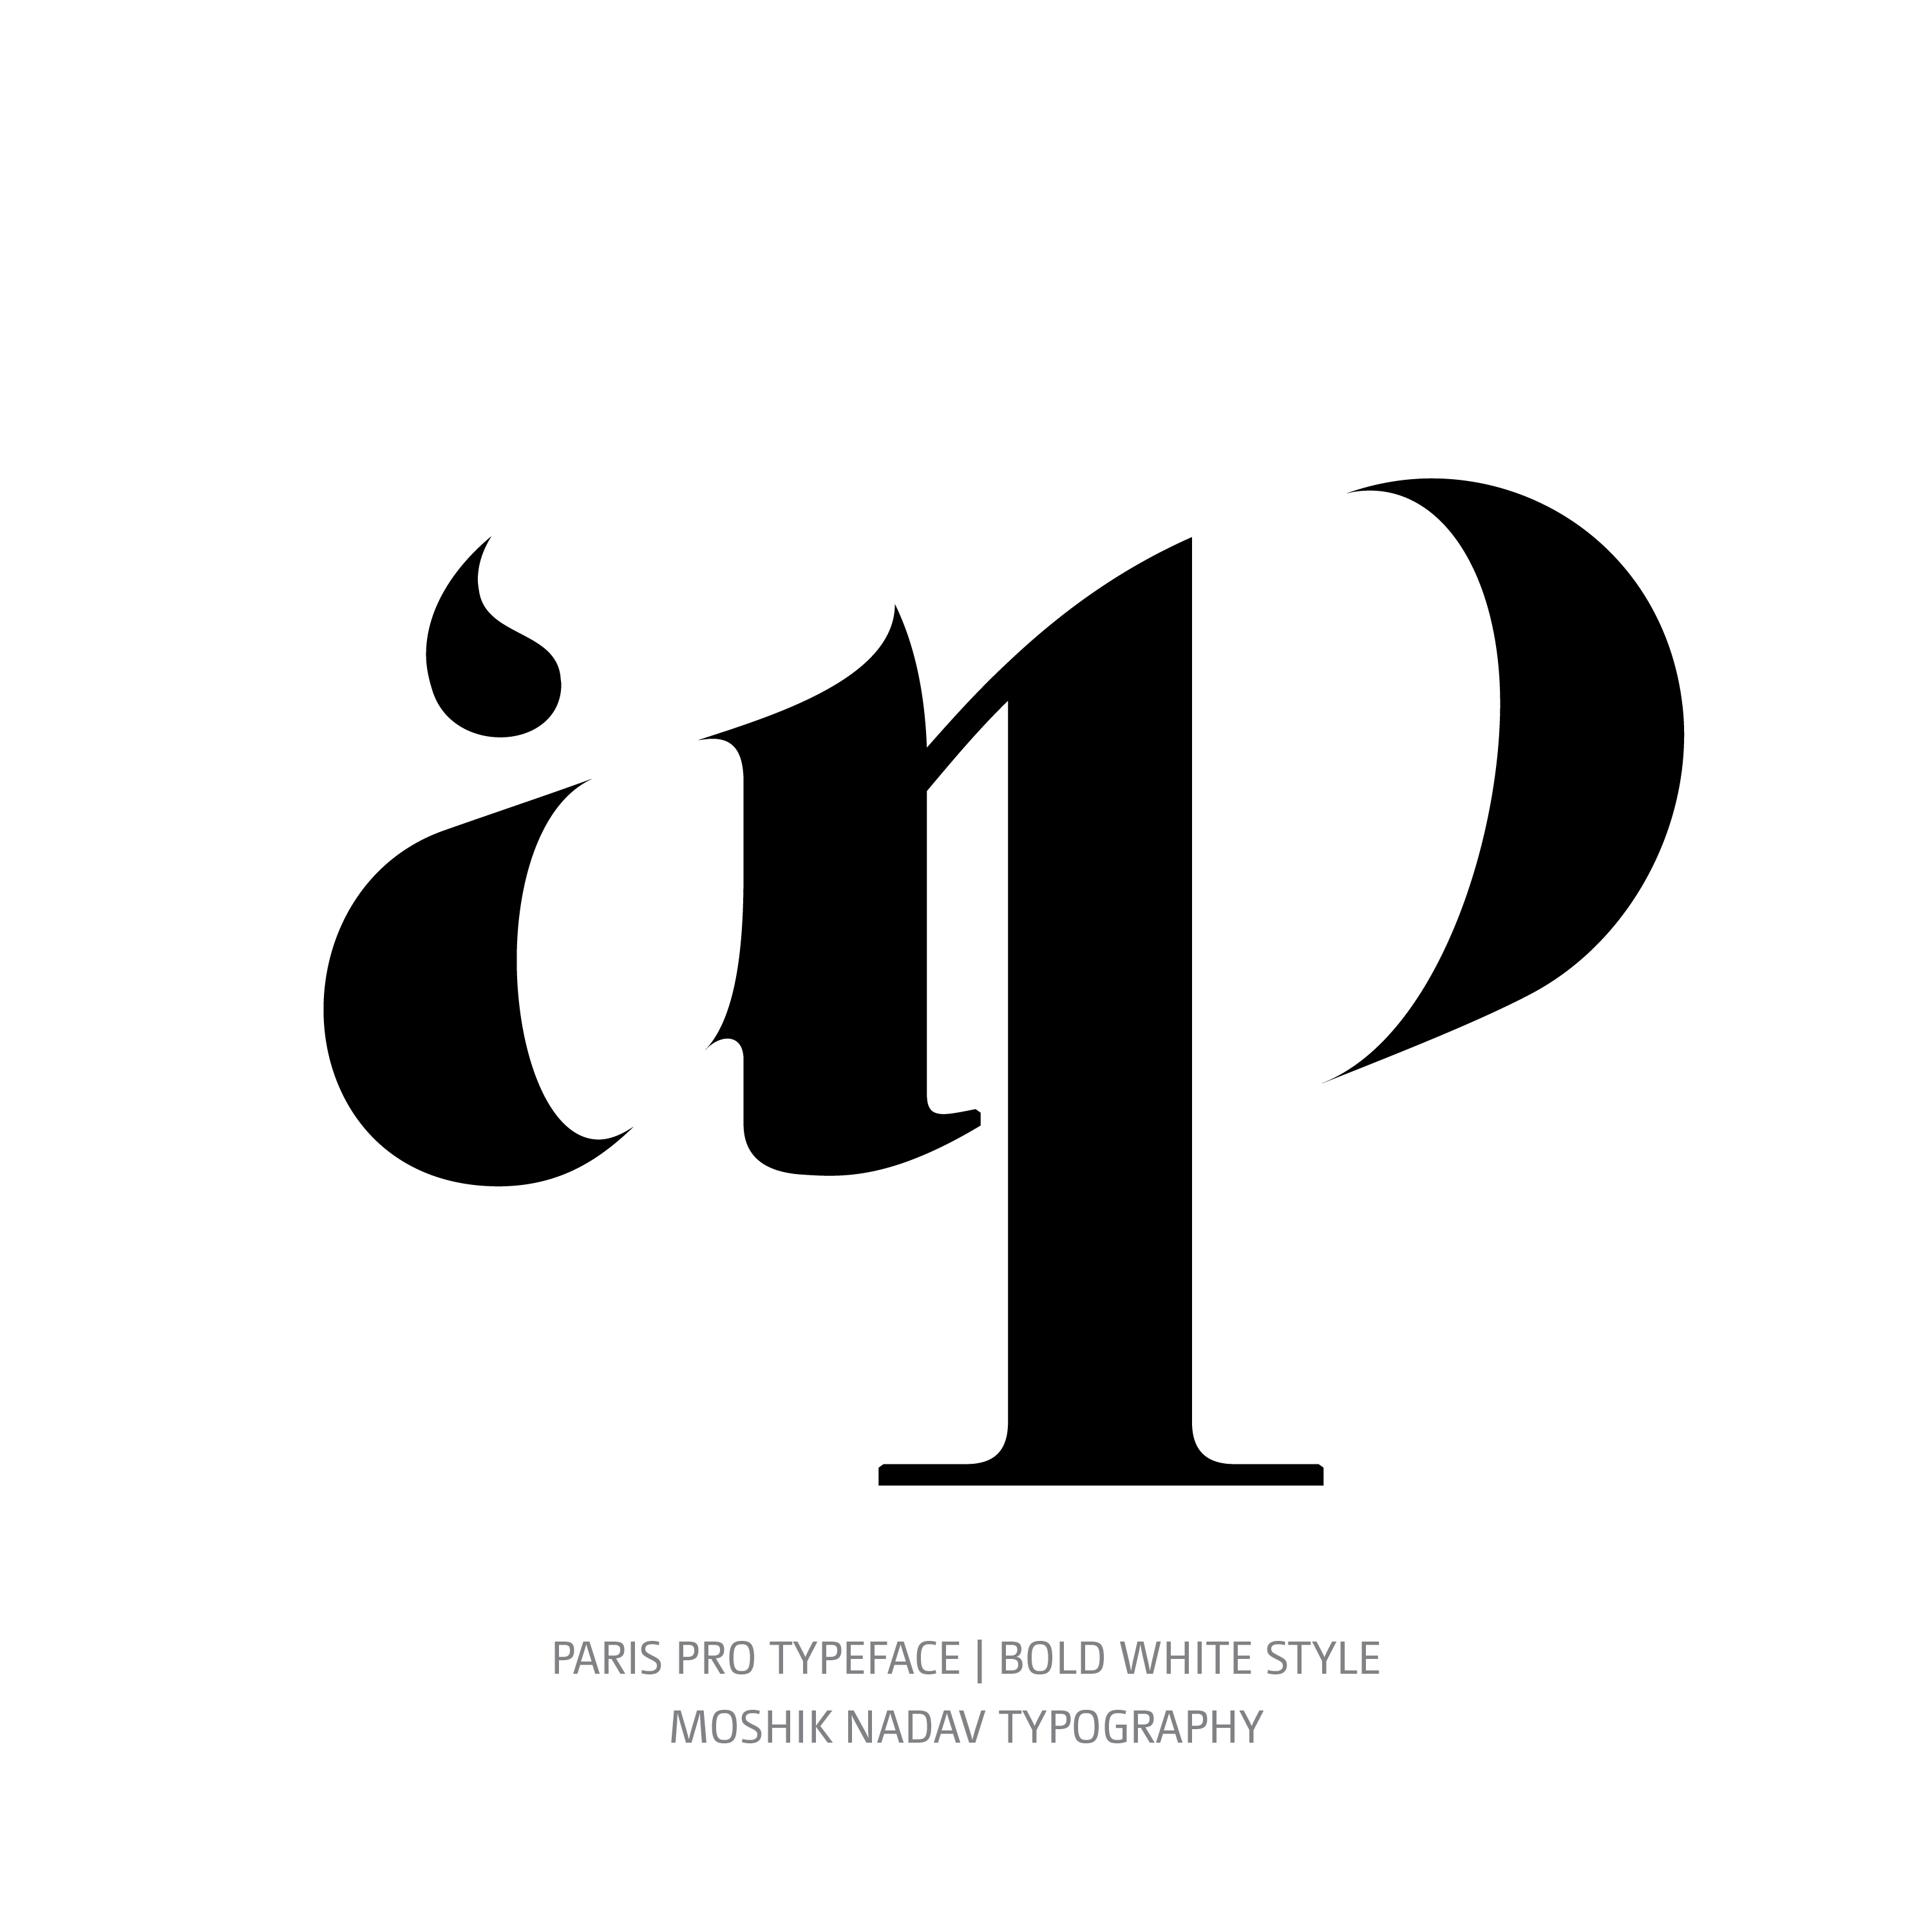 Paris Pro Typeface Bold White ap ligature